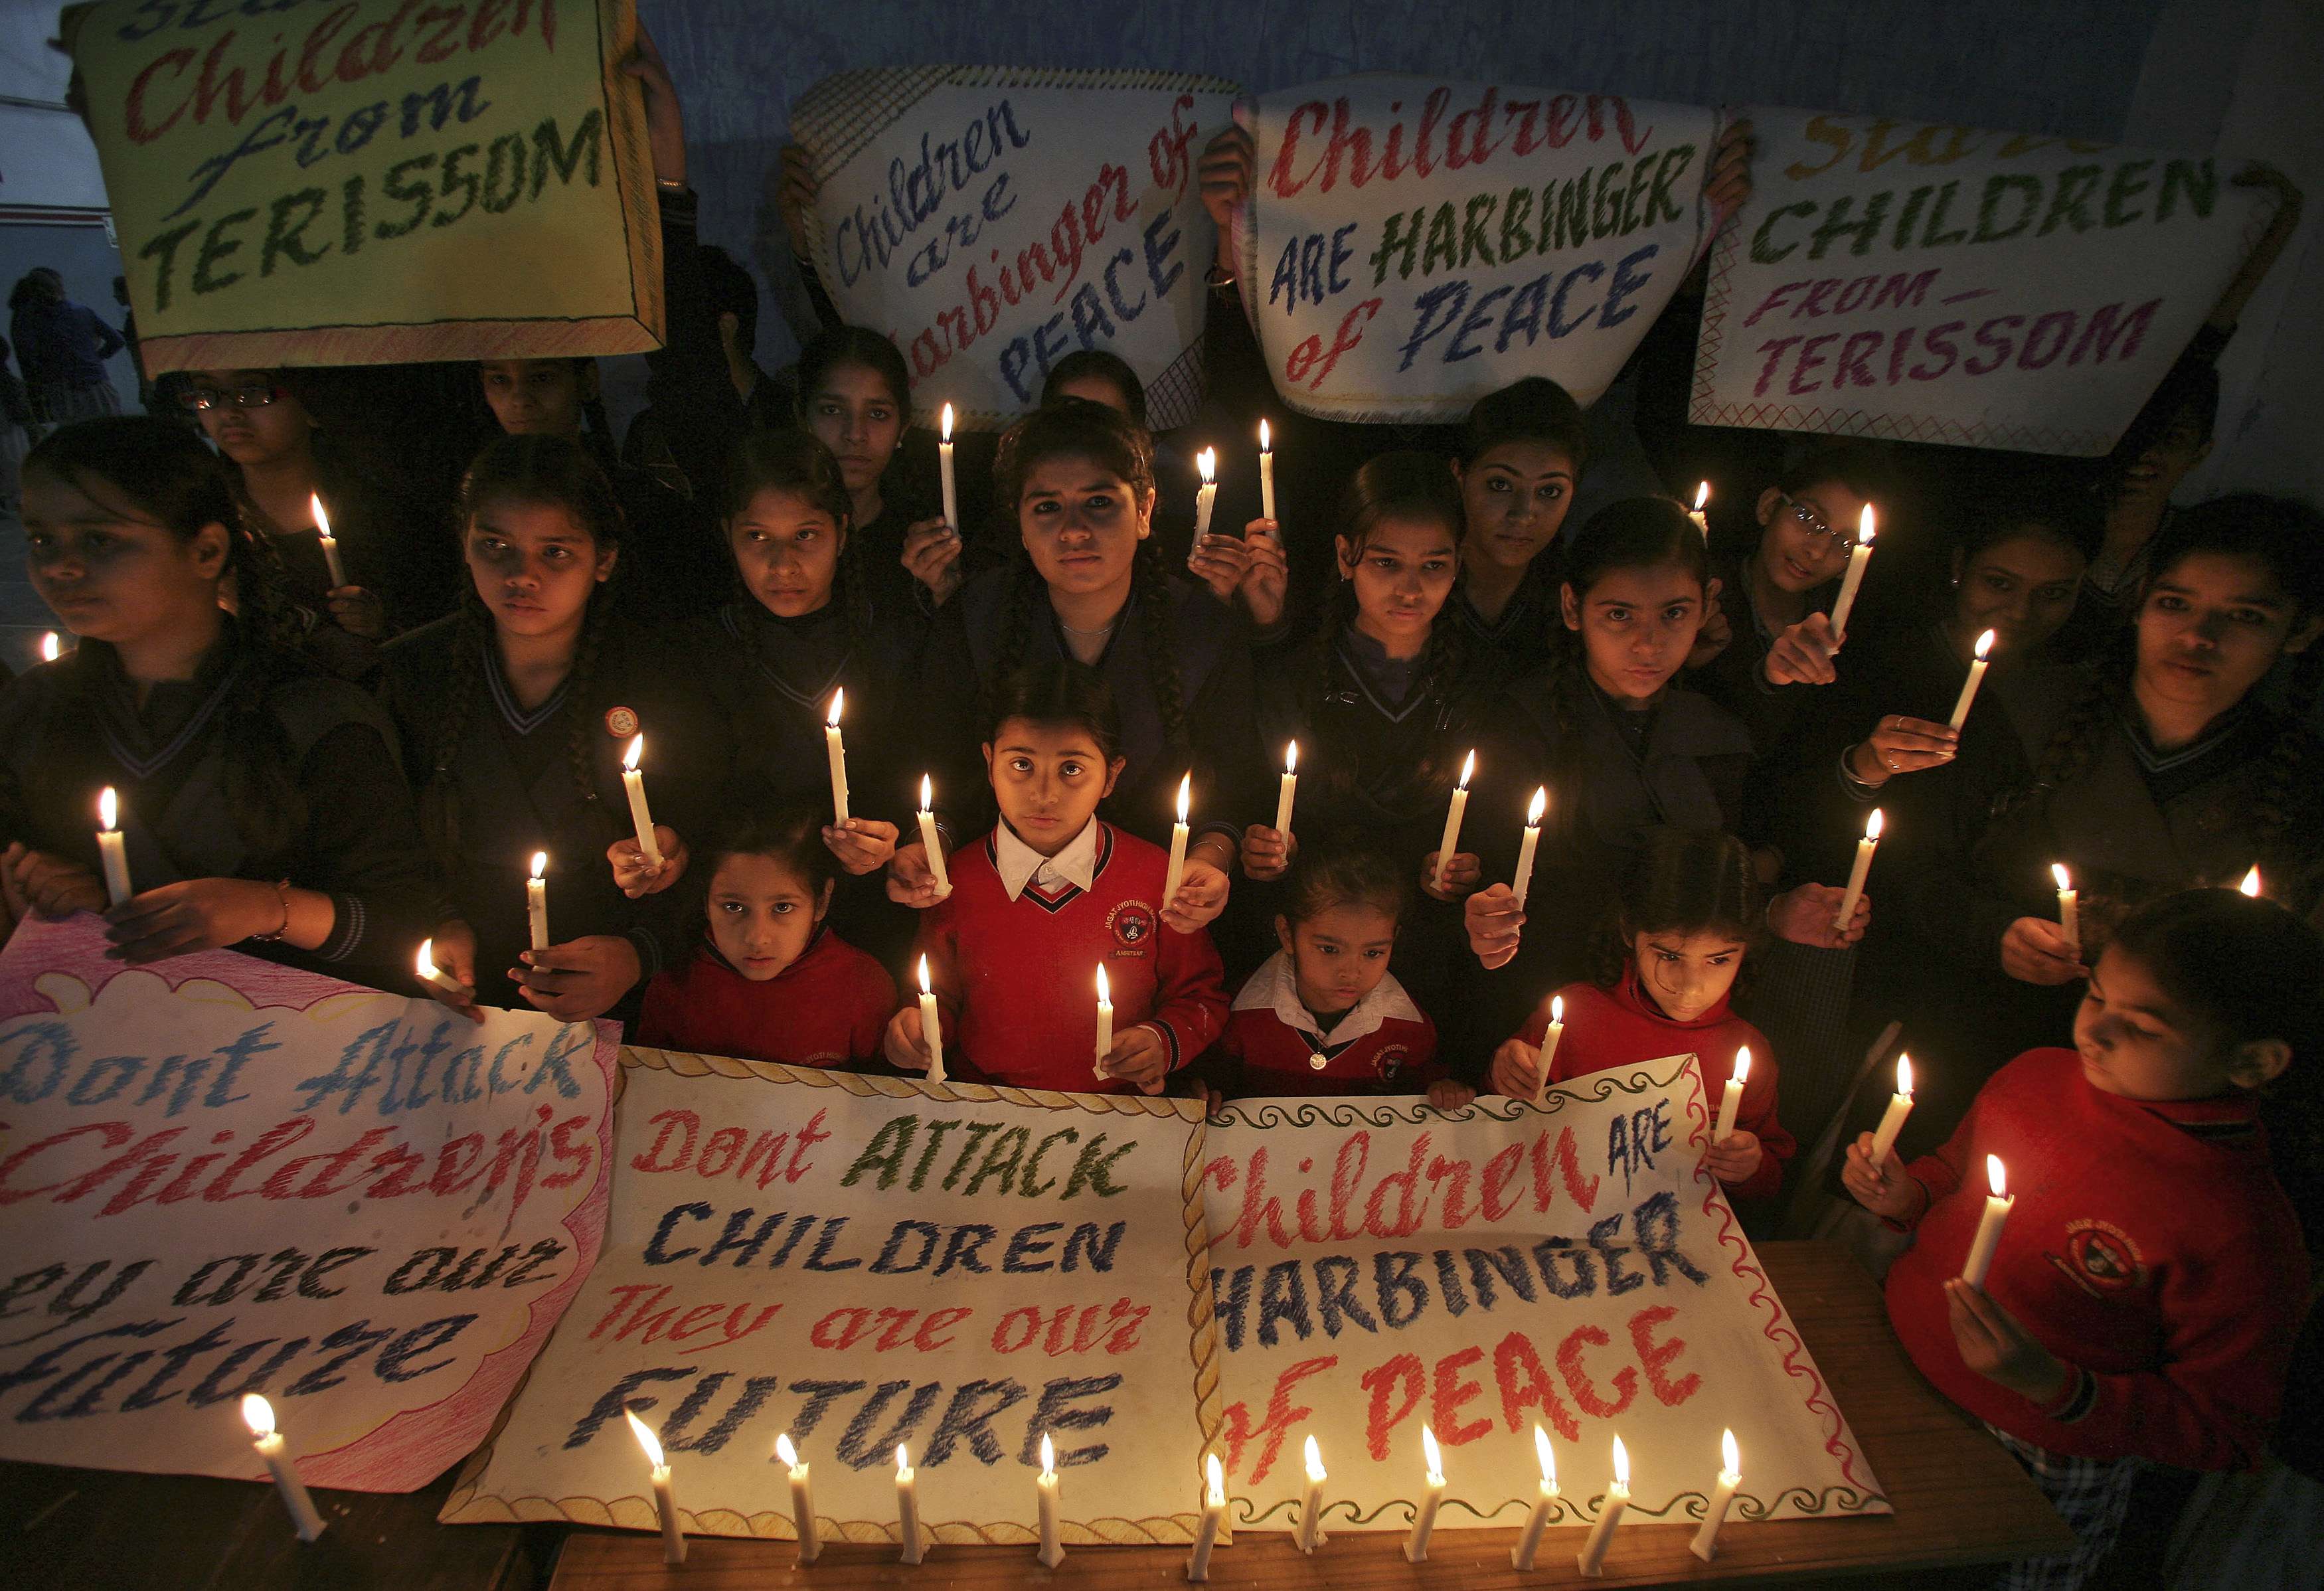 Pakistán llora a los niños asesinados y reafirma su guerra contra talibanes (Fotos)